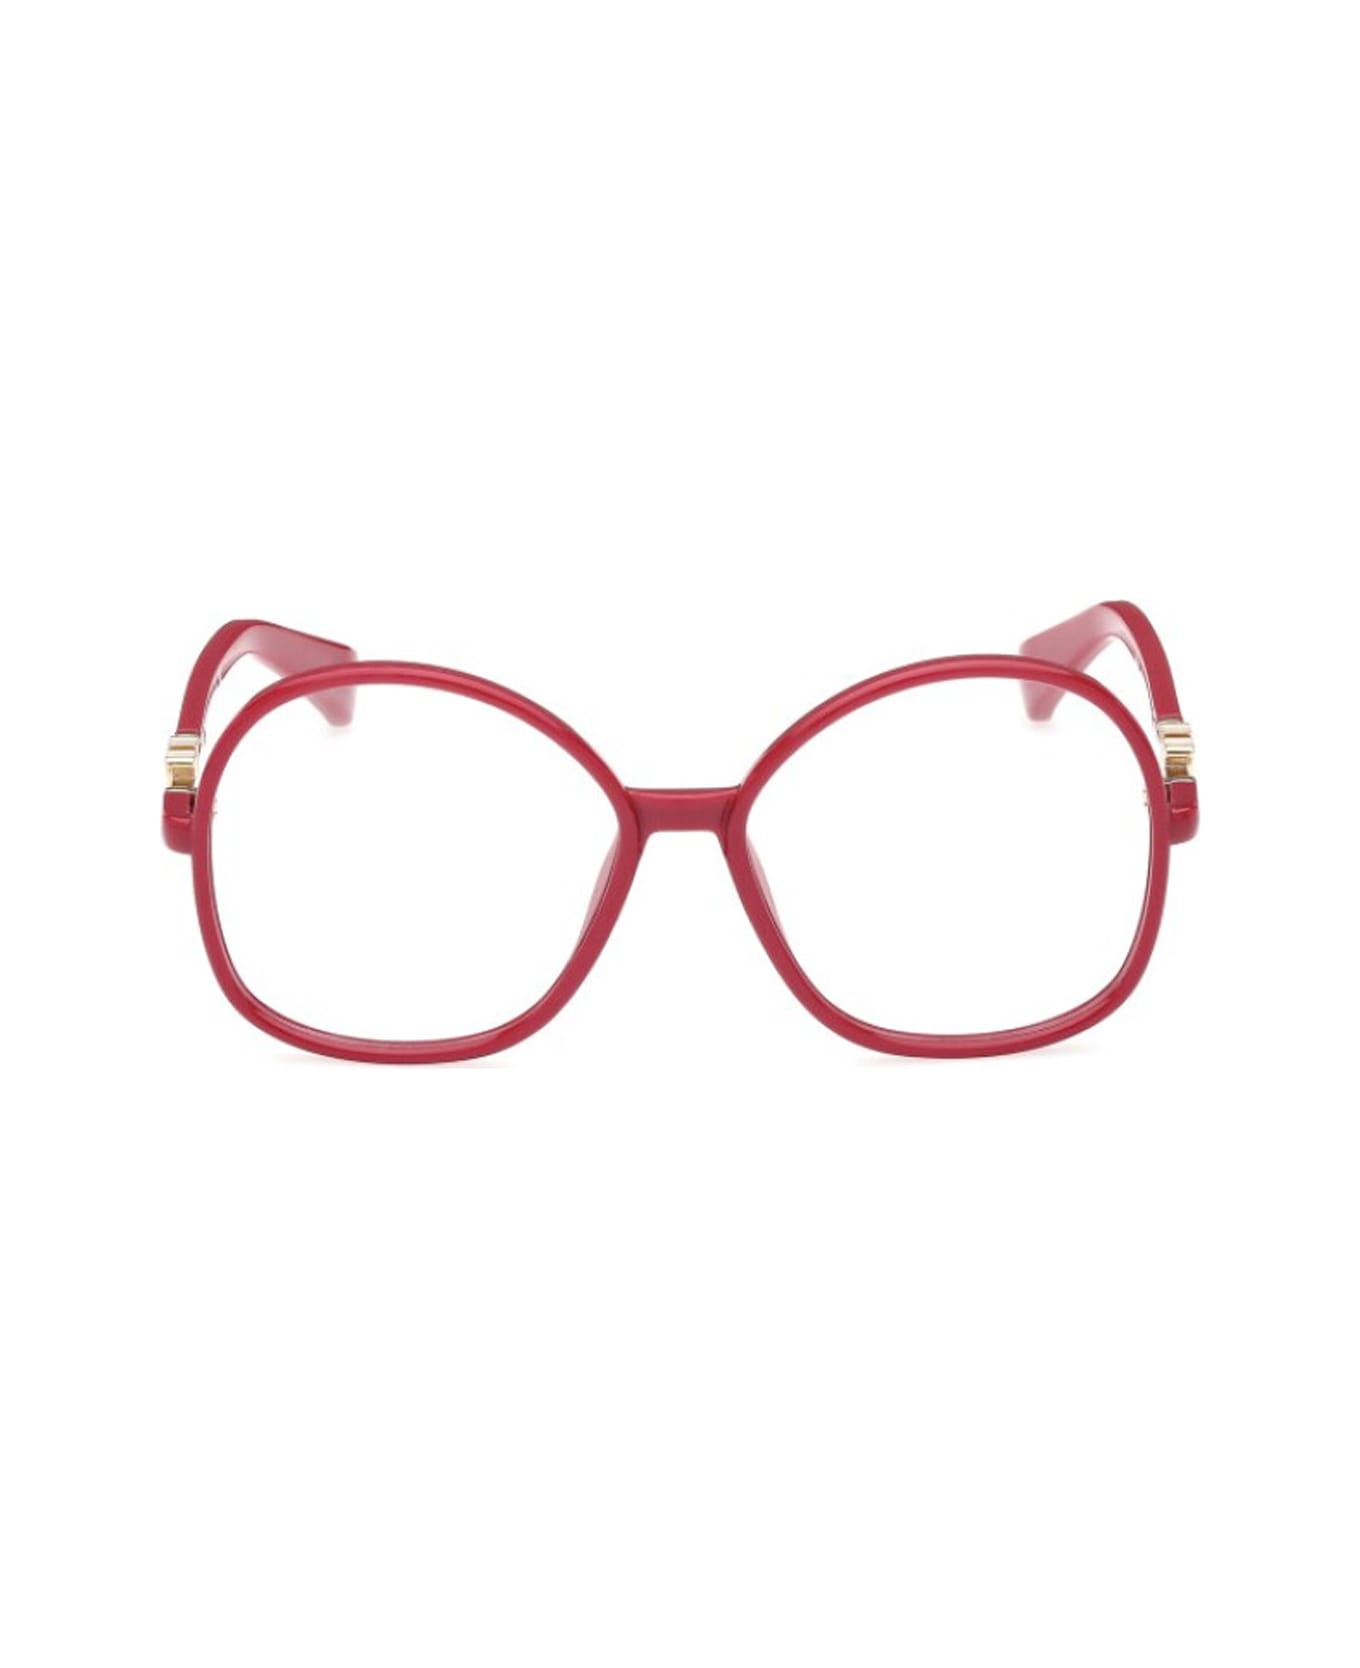 Max Mara Mm5100 075 Glasses - Rosso